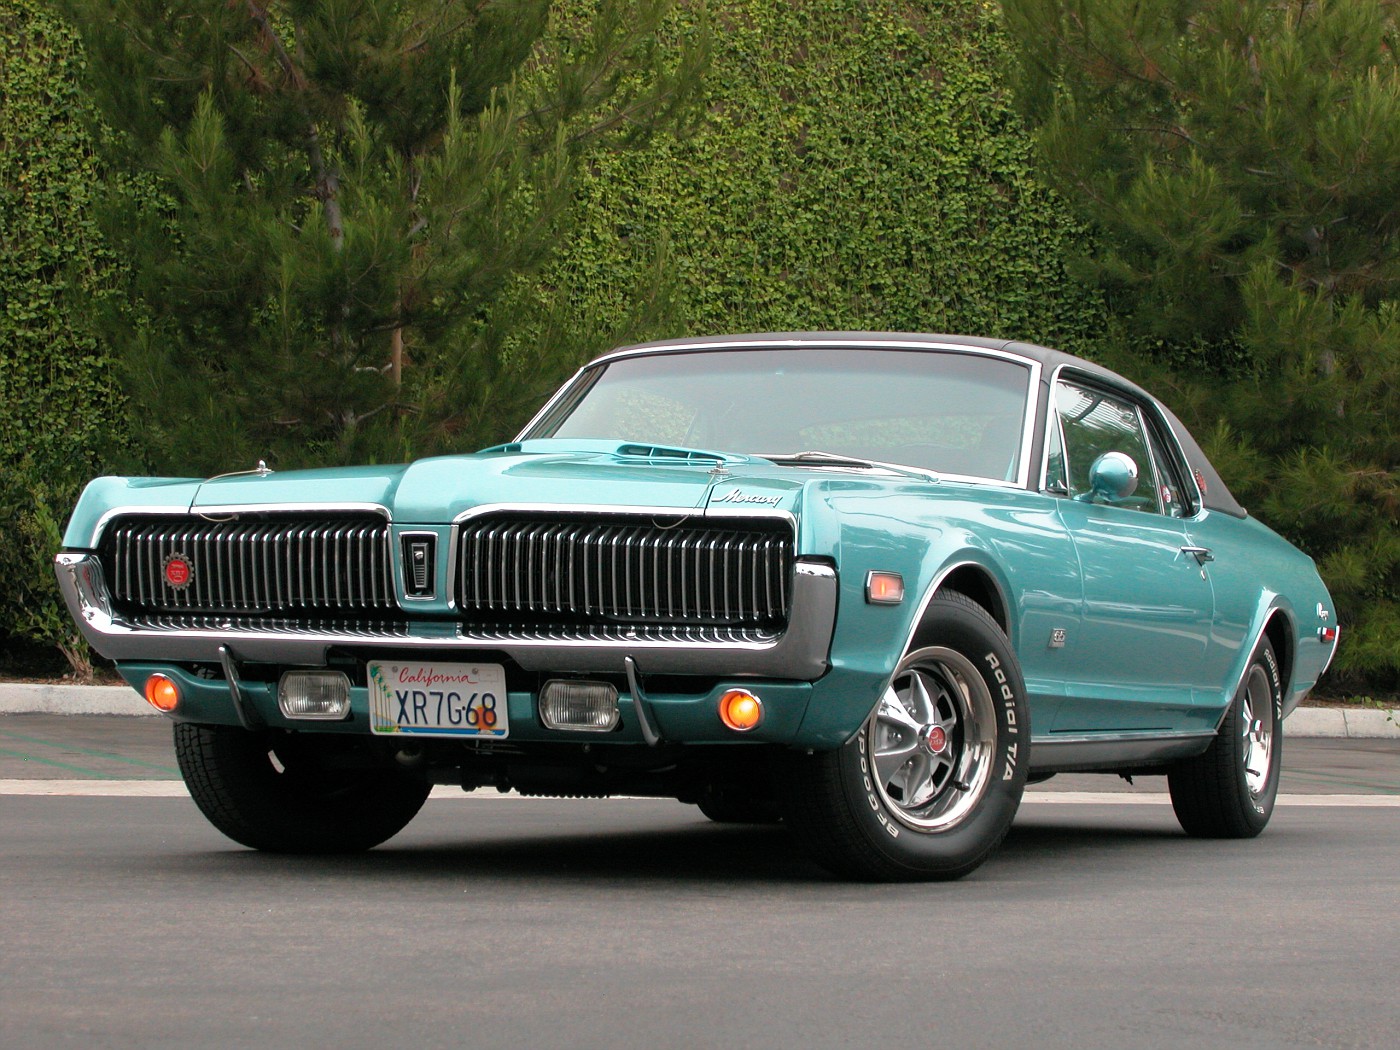 07 1968 Mercury Cougar XR7G